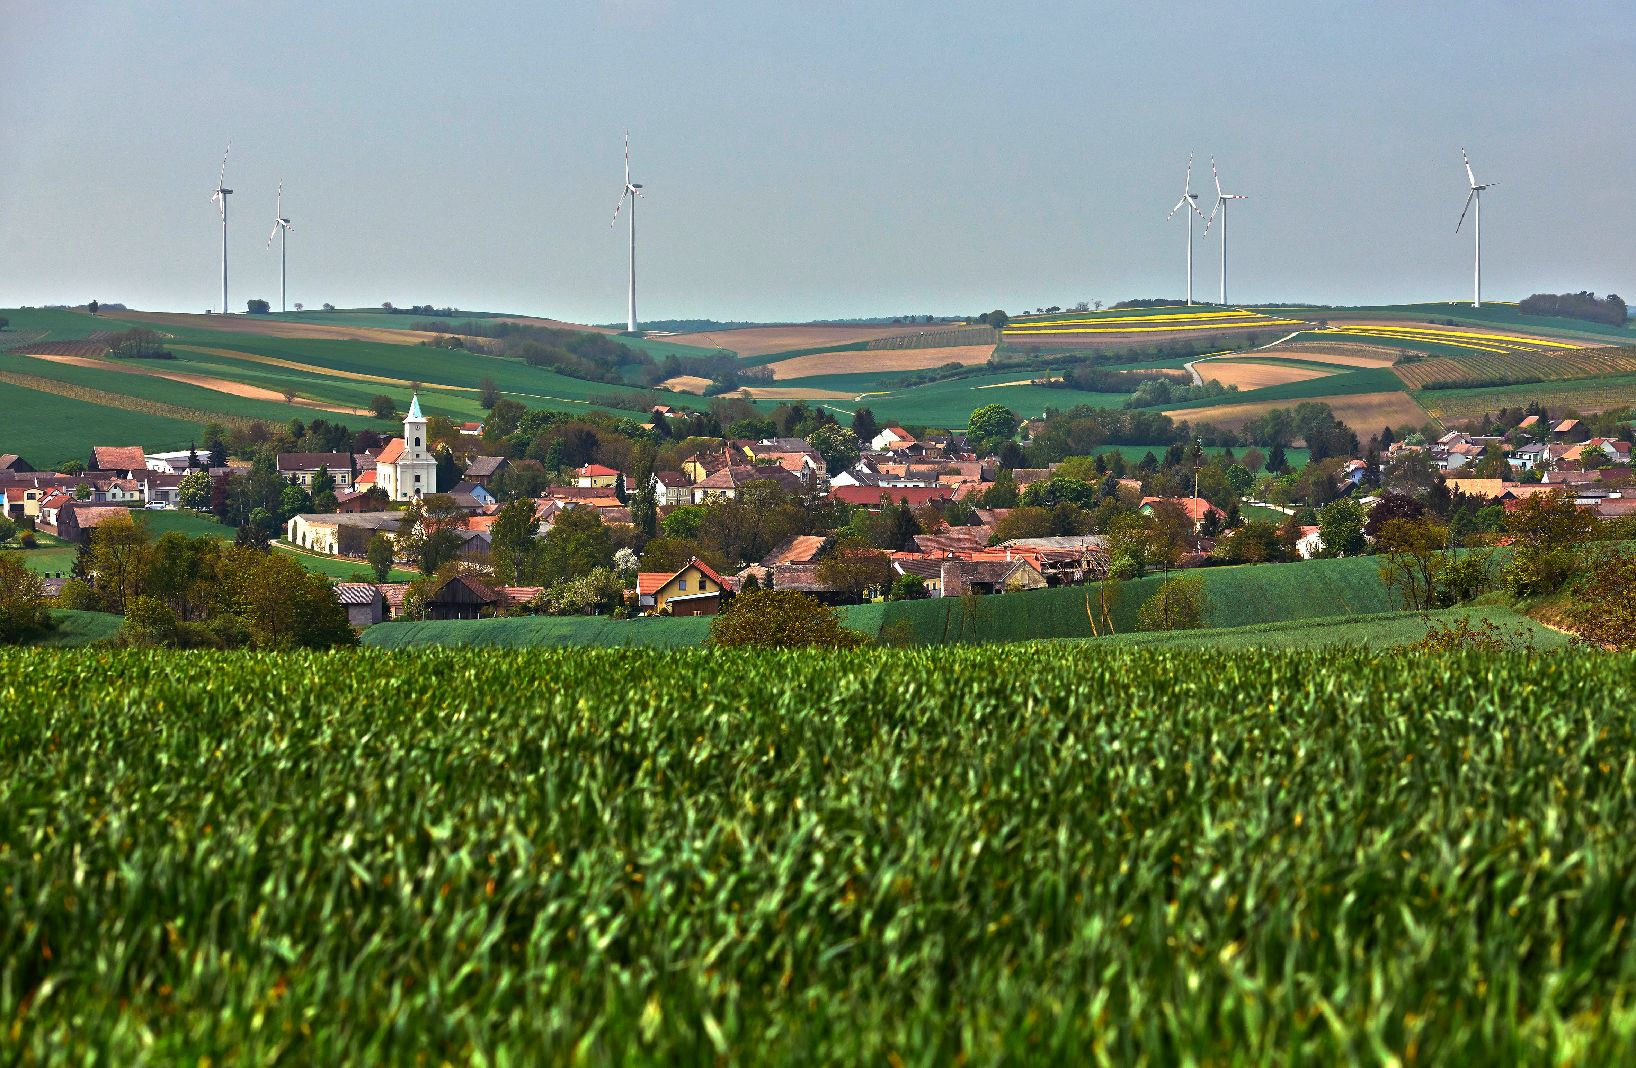 Corn field and wind mills